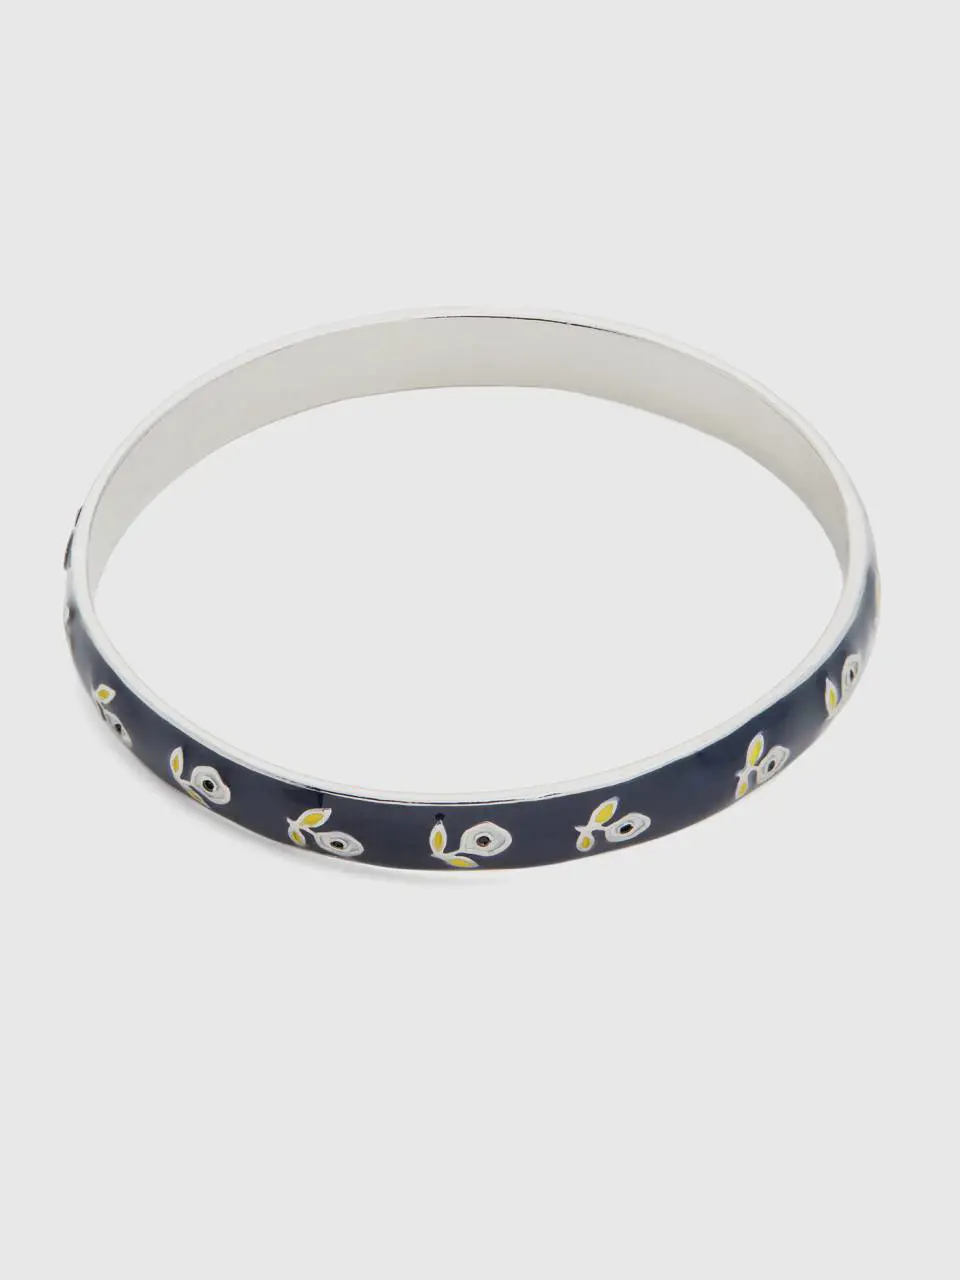 Benetton dark blue bangle bracelet with white flowers. 1